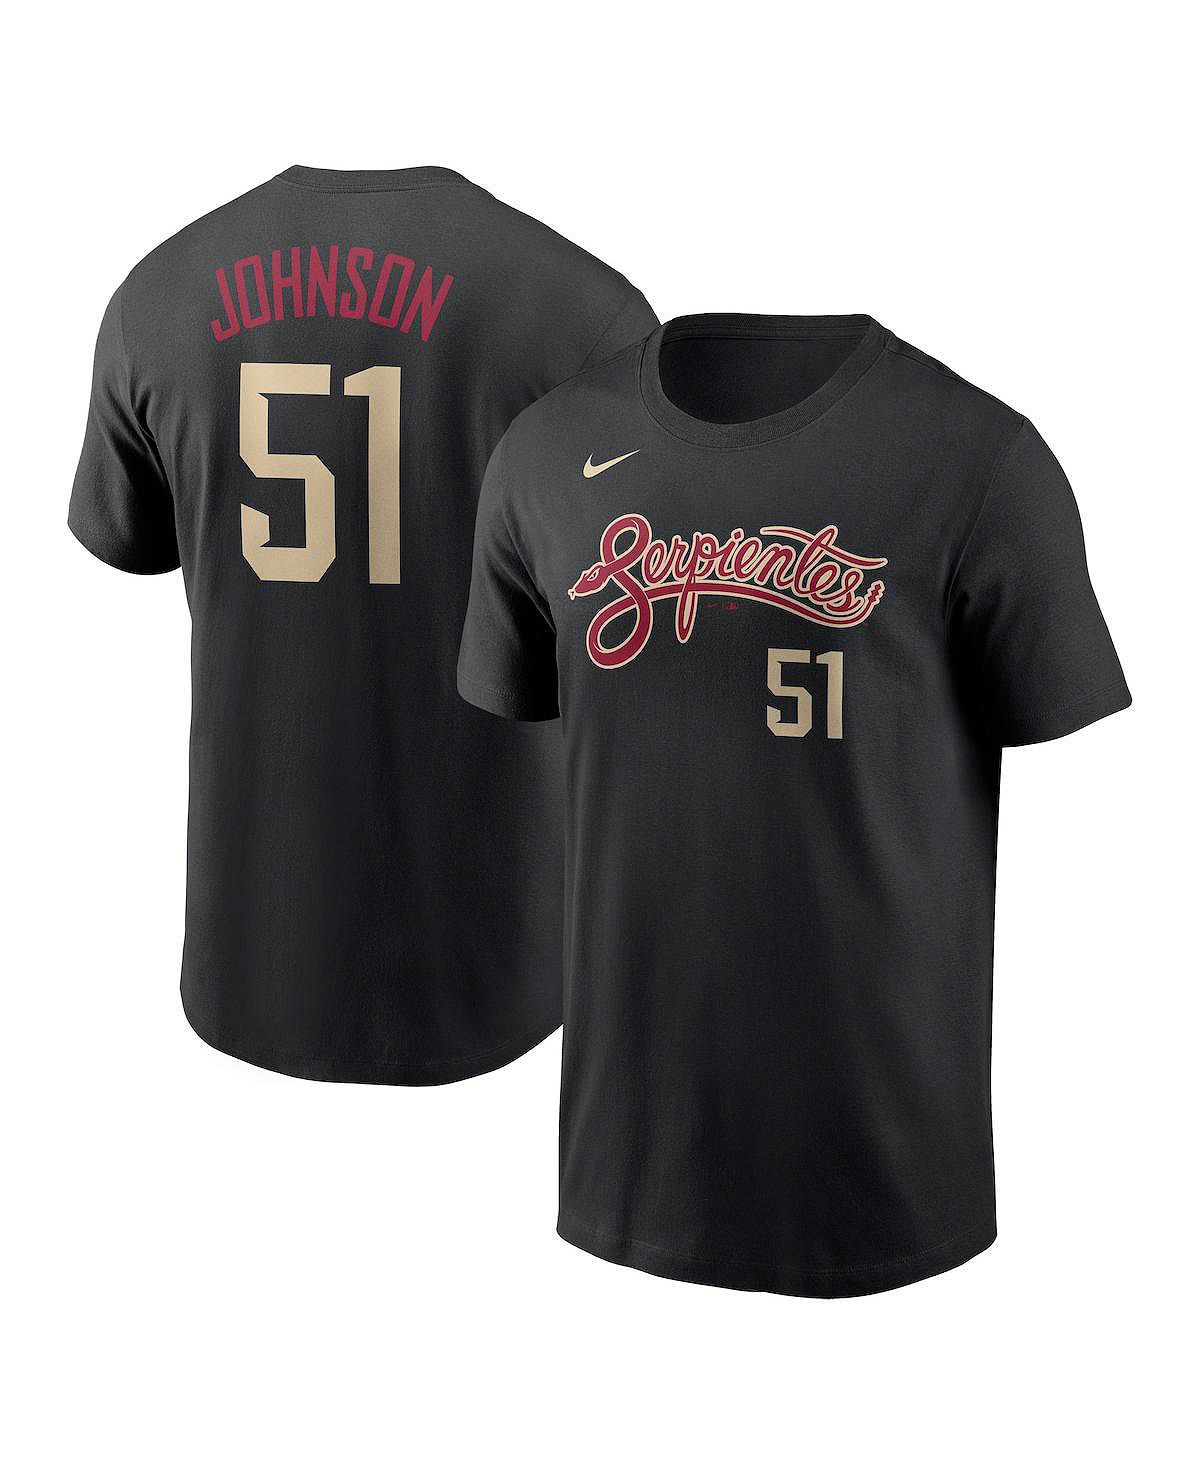 Мужская черная футболка Randy Johnson Arizona Diamondbacks City Connect с именем и номером Nike